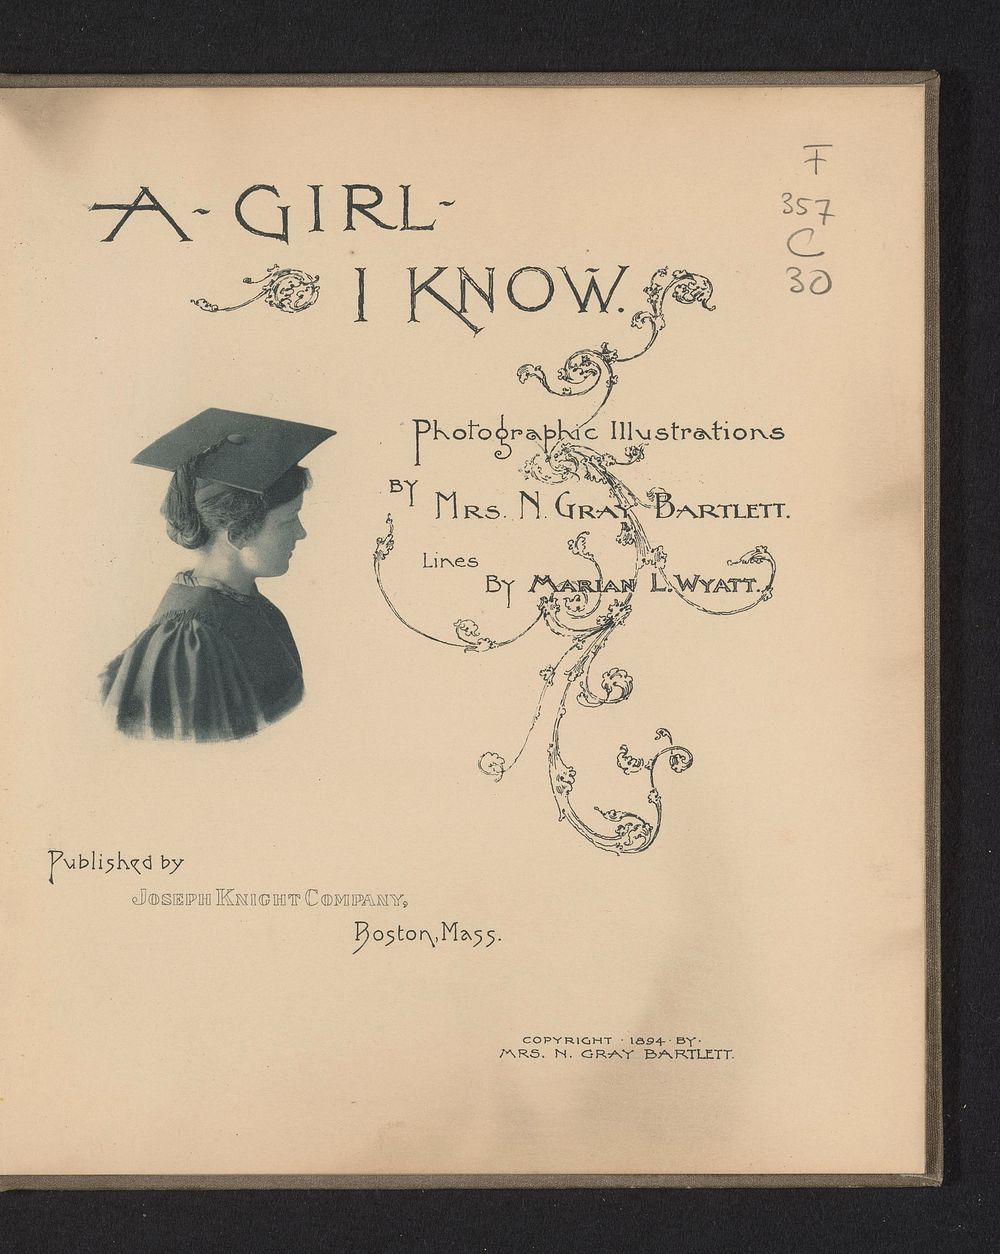 A girl I know (1894) by Mary Bartlett, Marian L Wyatt and Joseph Knight Company